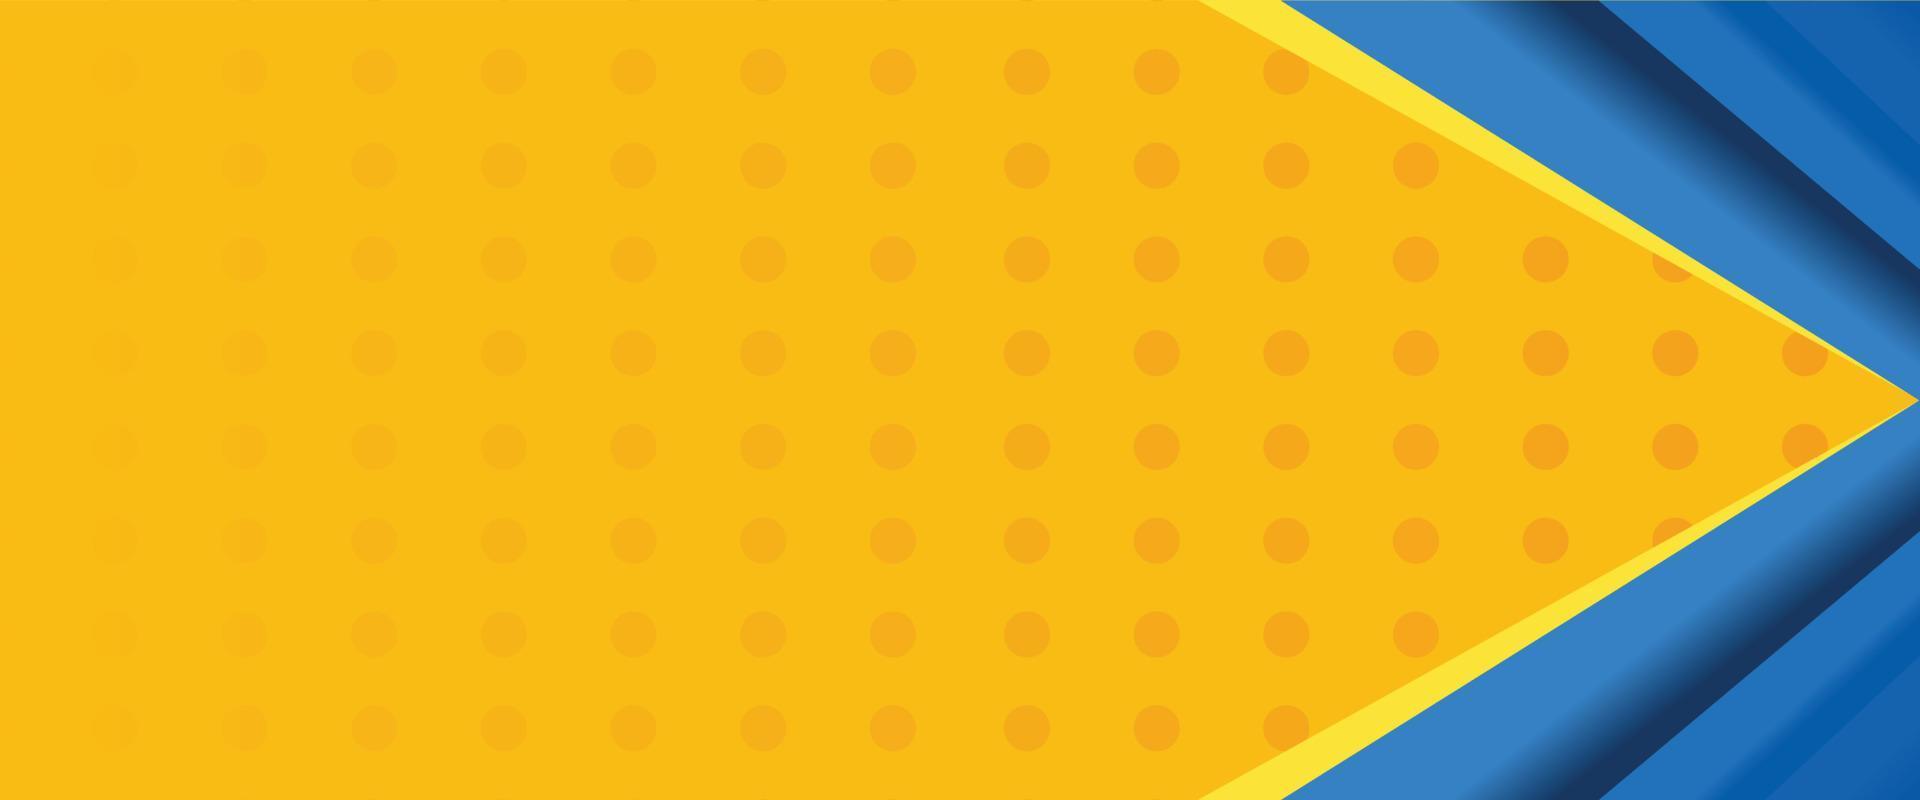 gelber abstrakter hintergrund mit blauer farbkombination vektor